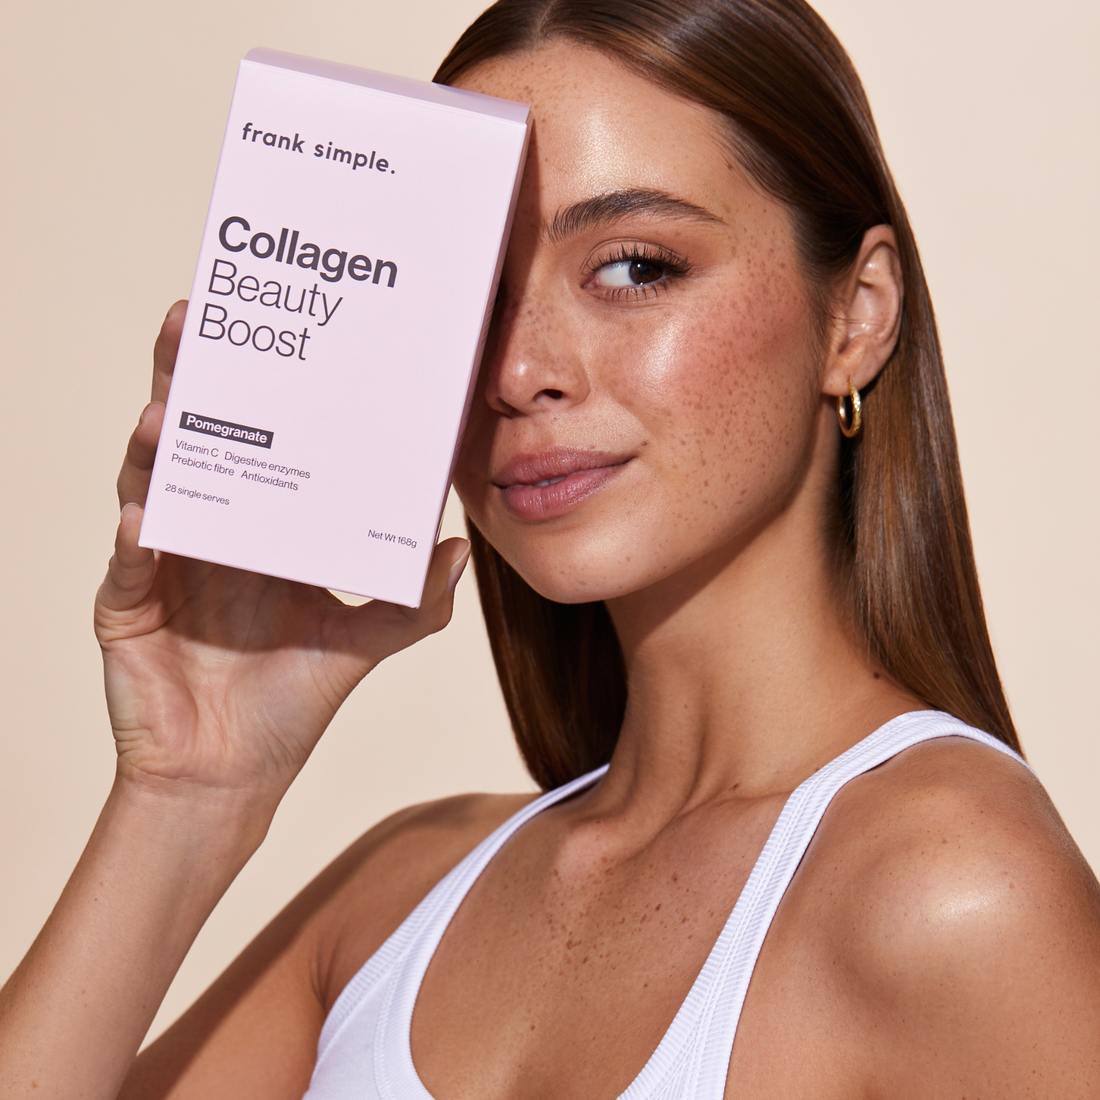 Collagen Beauty Boost Sachets